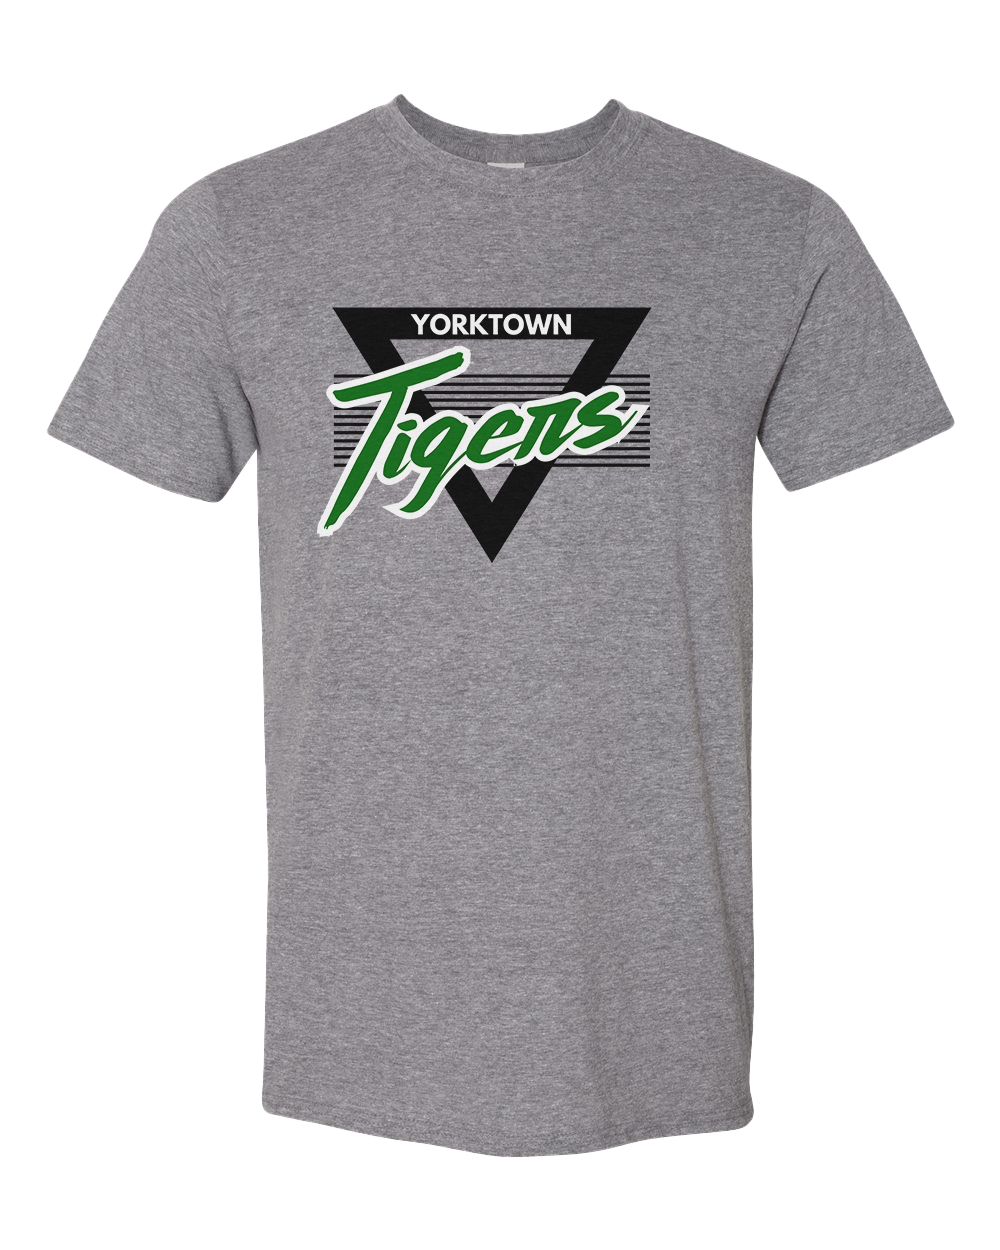 Yorktown Tigers Retro 90s Tshirt - Graphite Heather